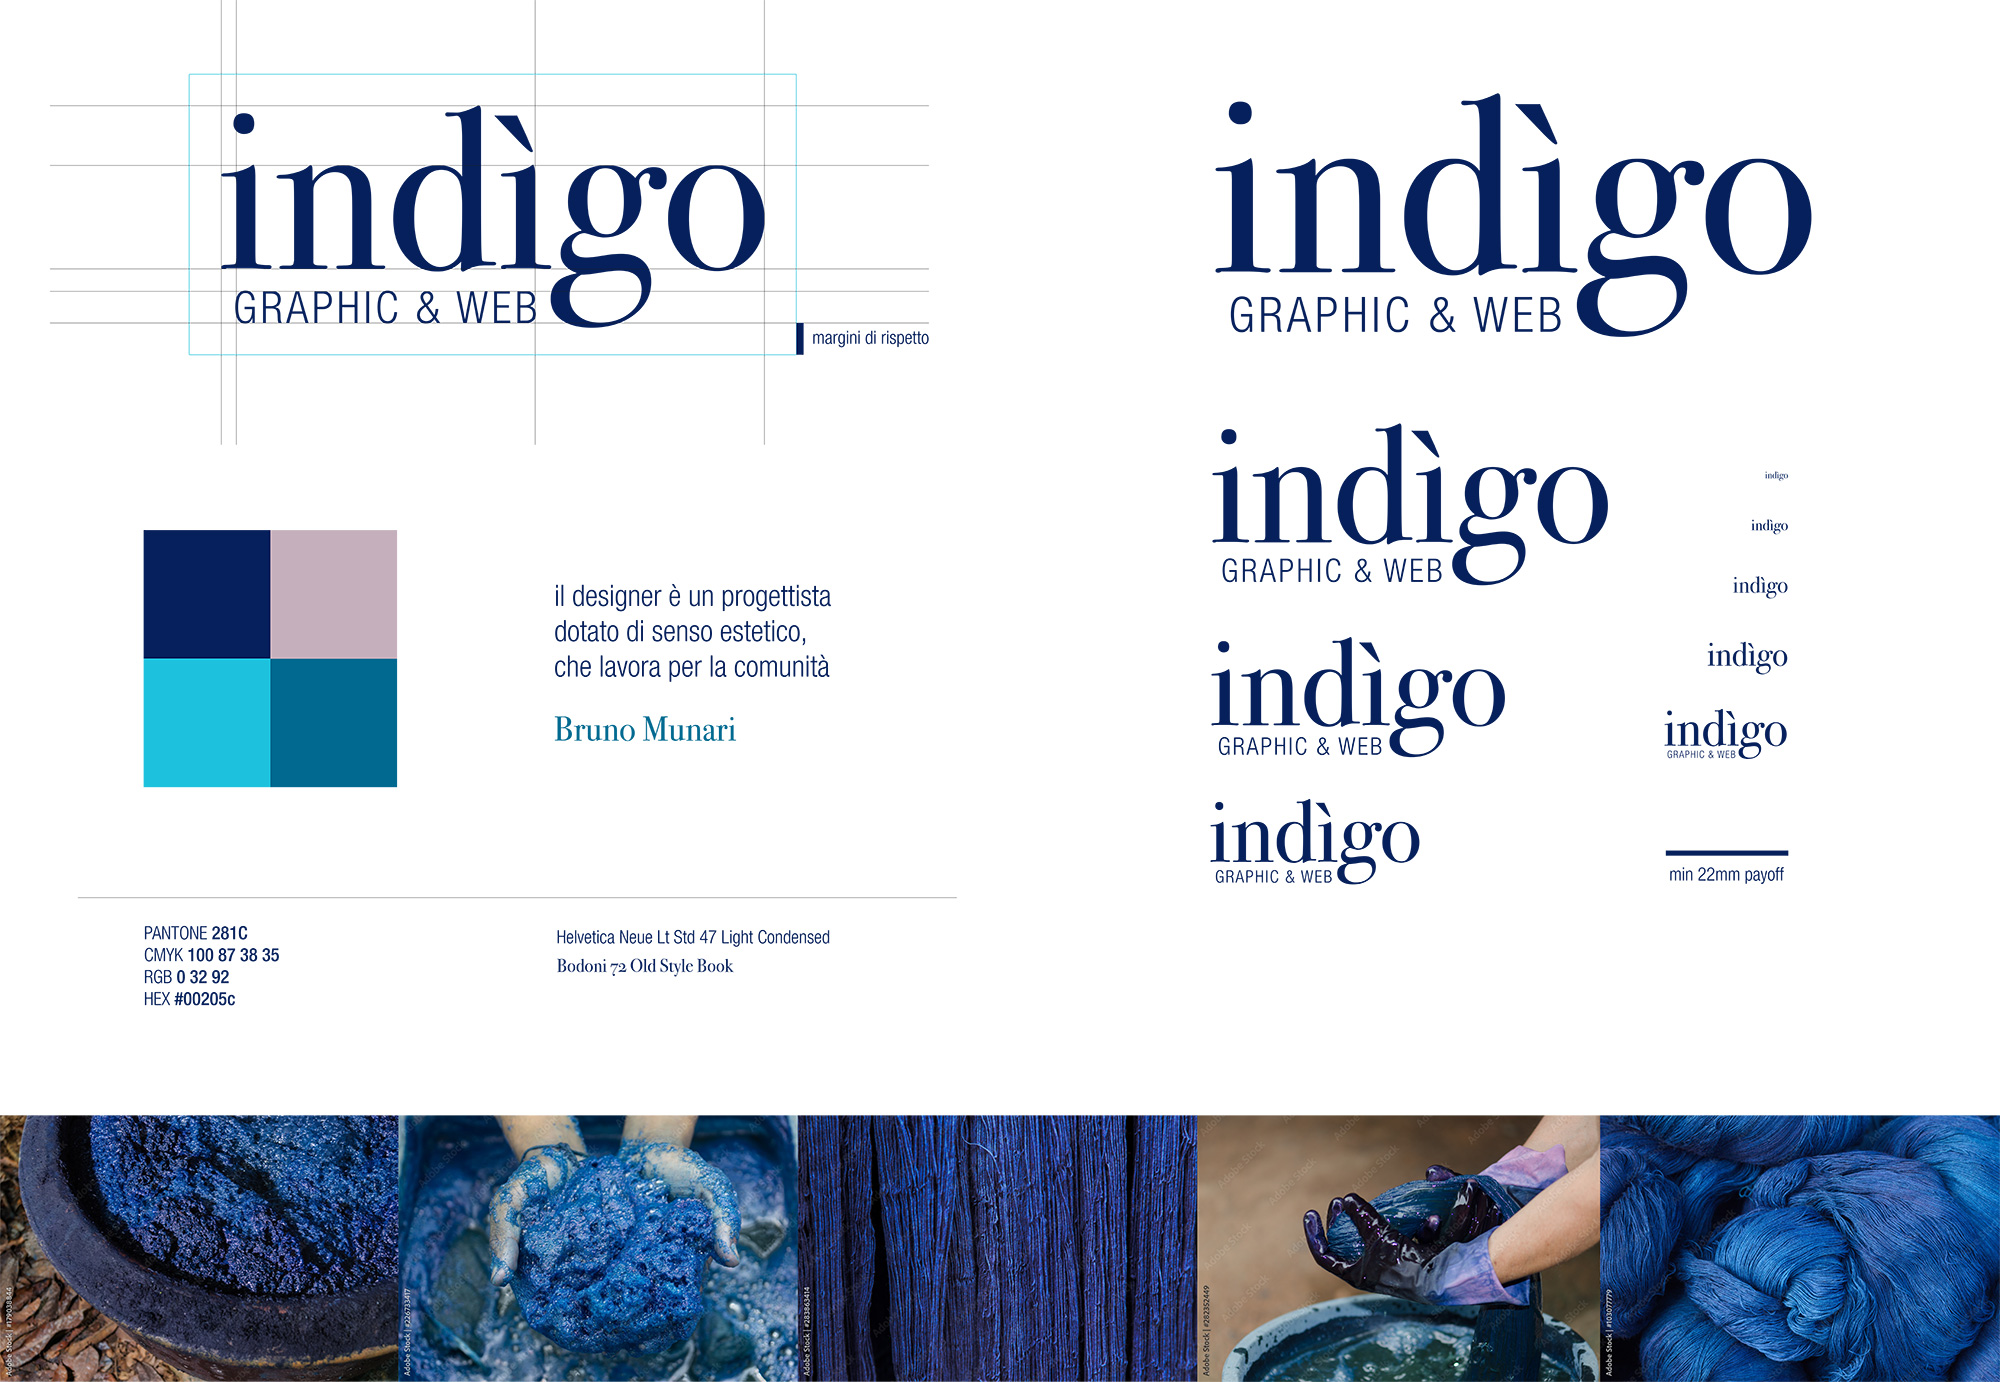 Il mood indigo: una panoramica di immagini e grafiche che restituiscono l'essenza di indigo: artigianalità, qualità, colori, lettering, rigore estetico, ecc.